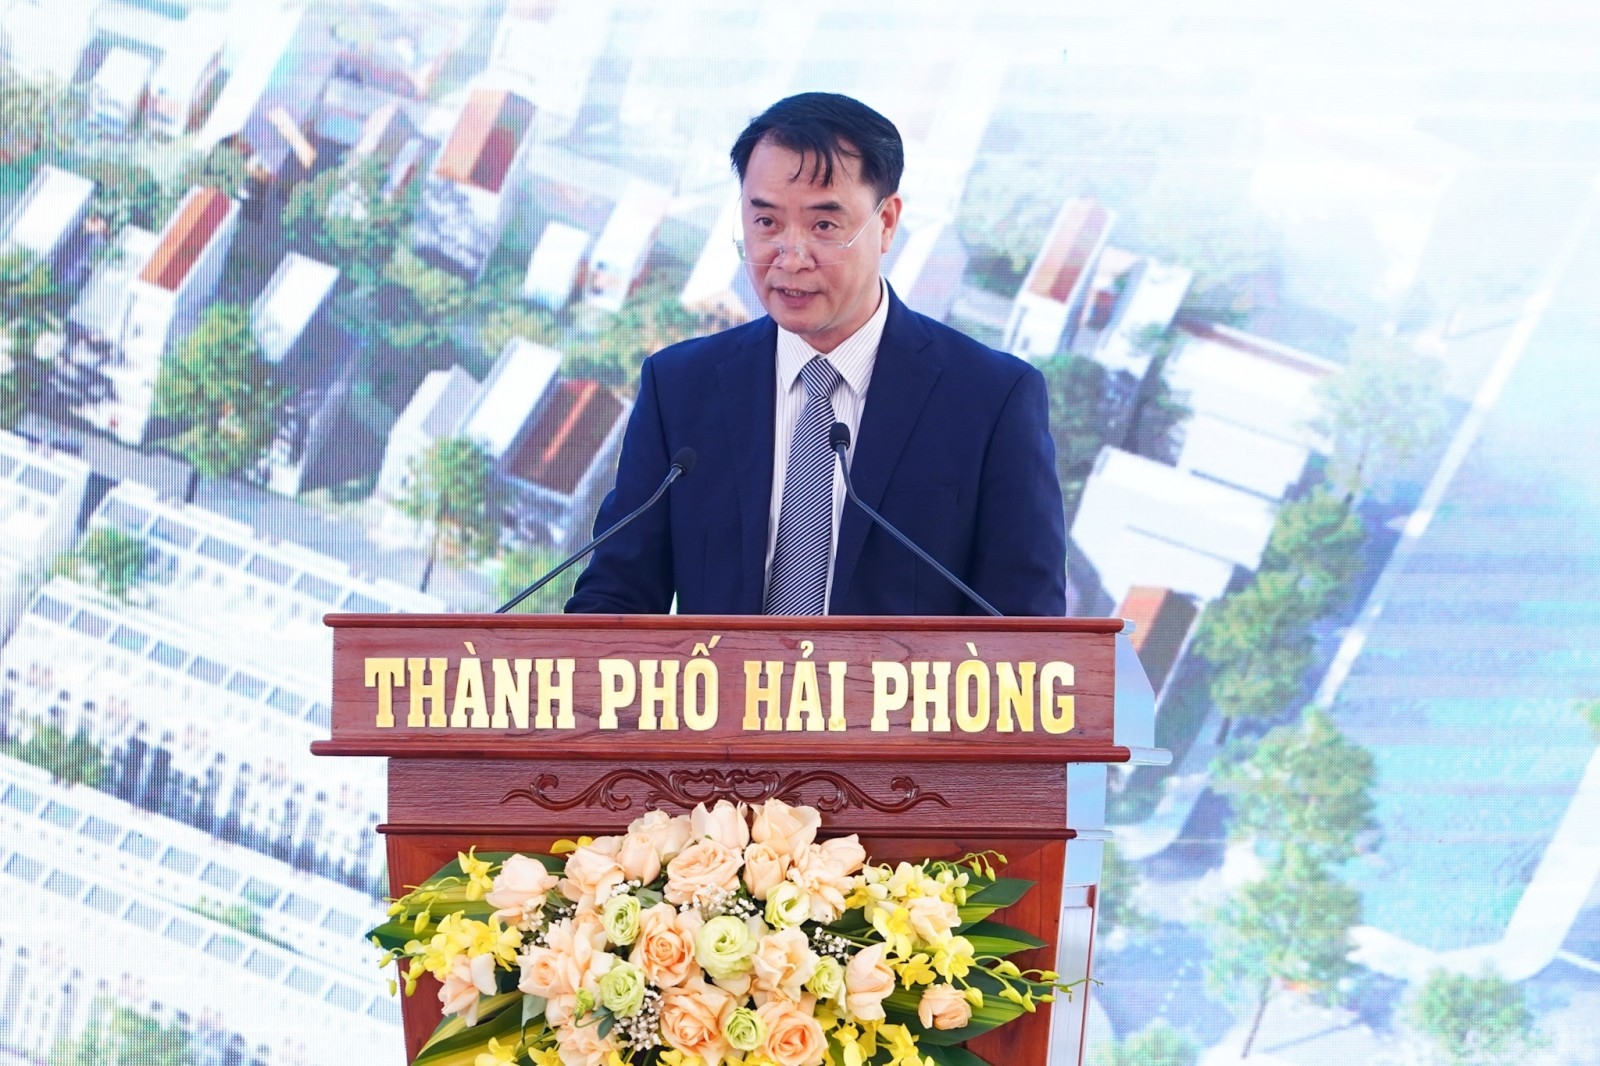 Ông Nguyễn Thế Tâm, Chủ tịch Hội đồng quản trị, Giám đốc công ty Cổ phần Thái – Holding phát biểu tại lễ khởi công